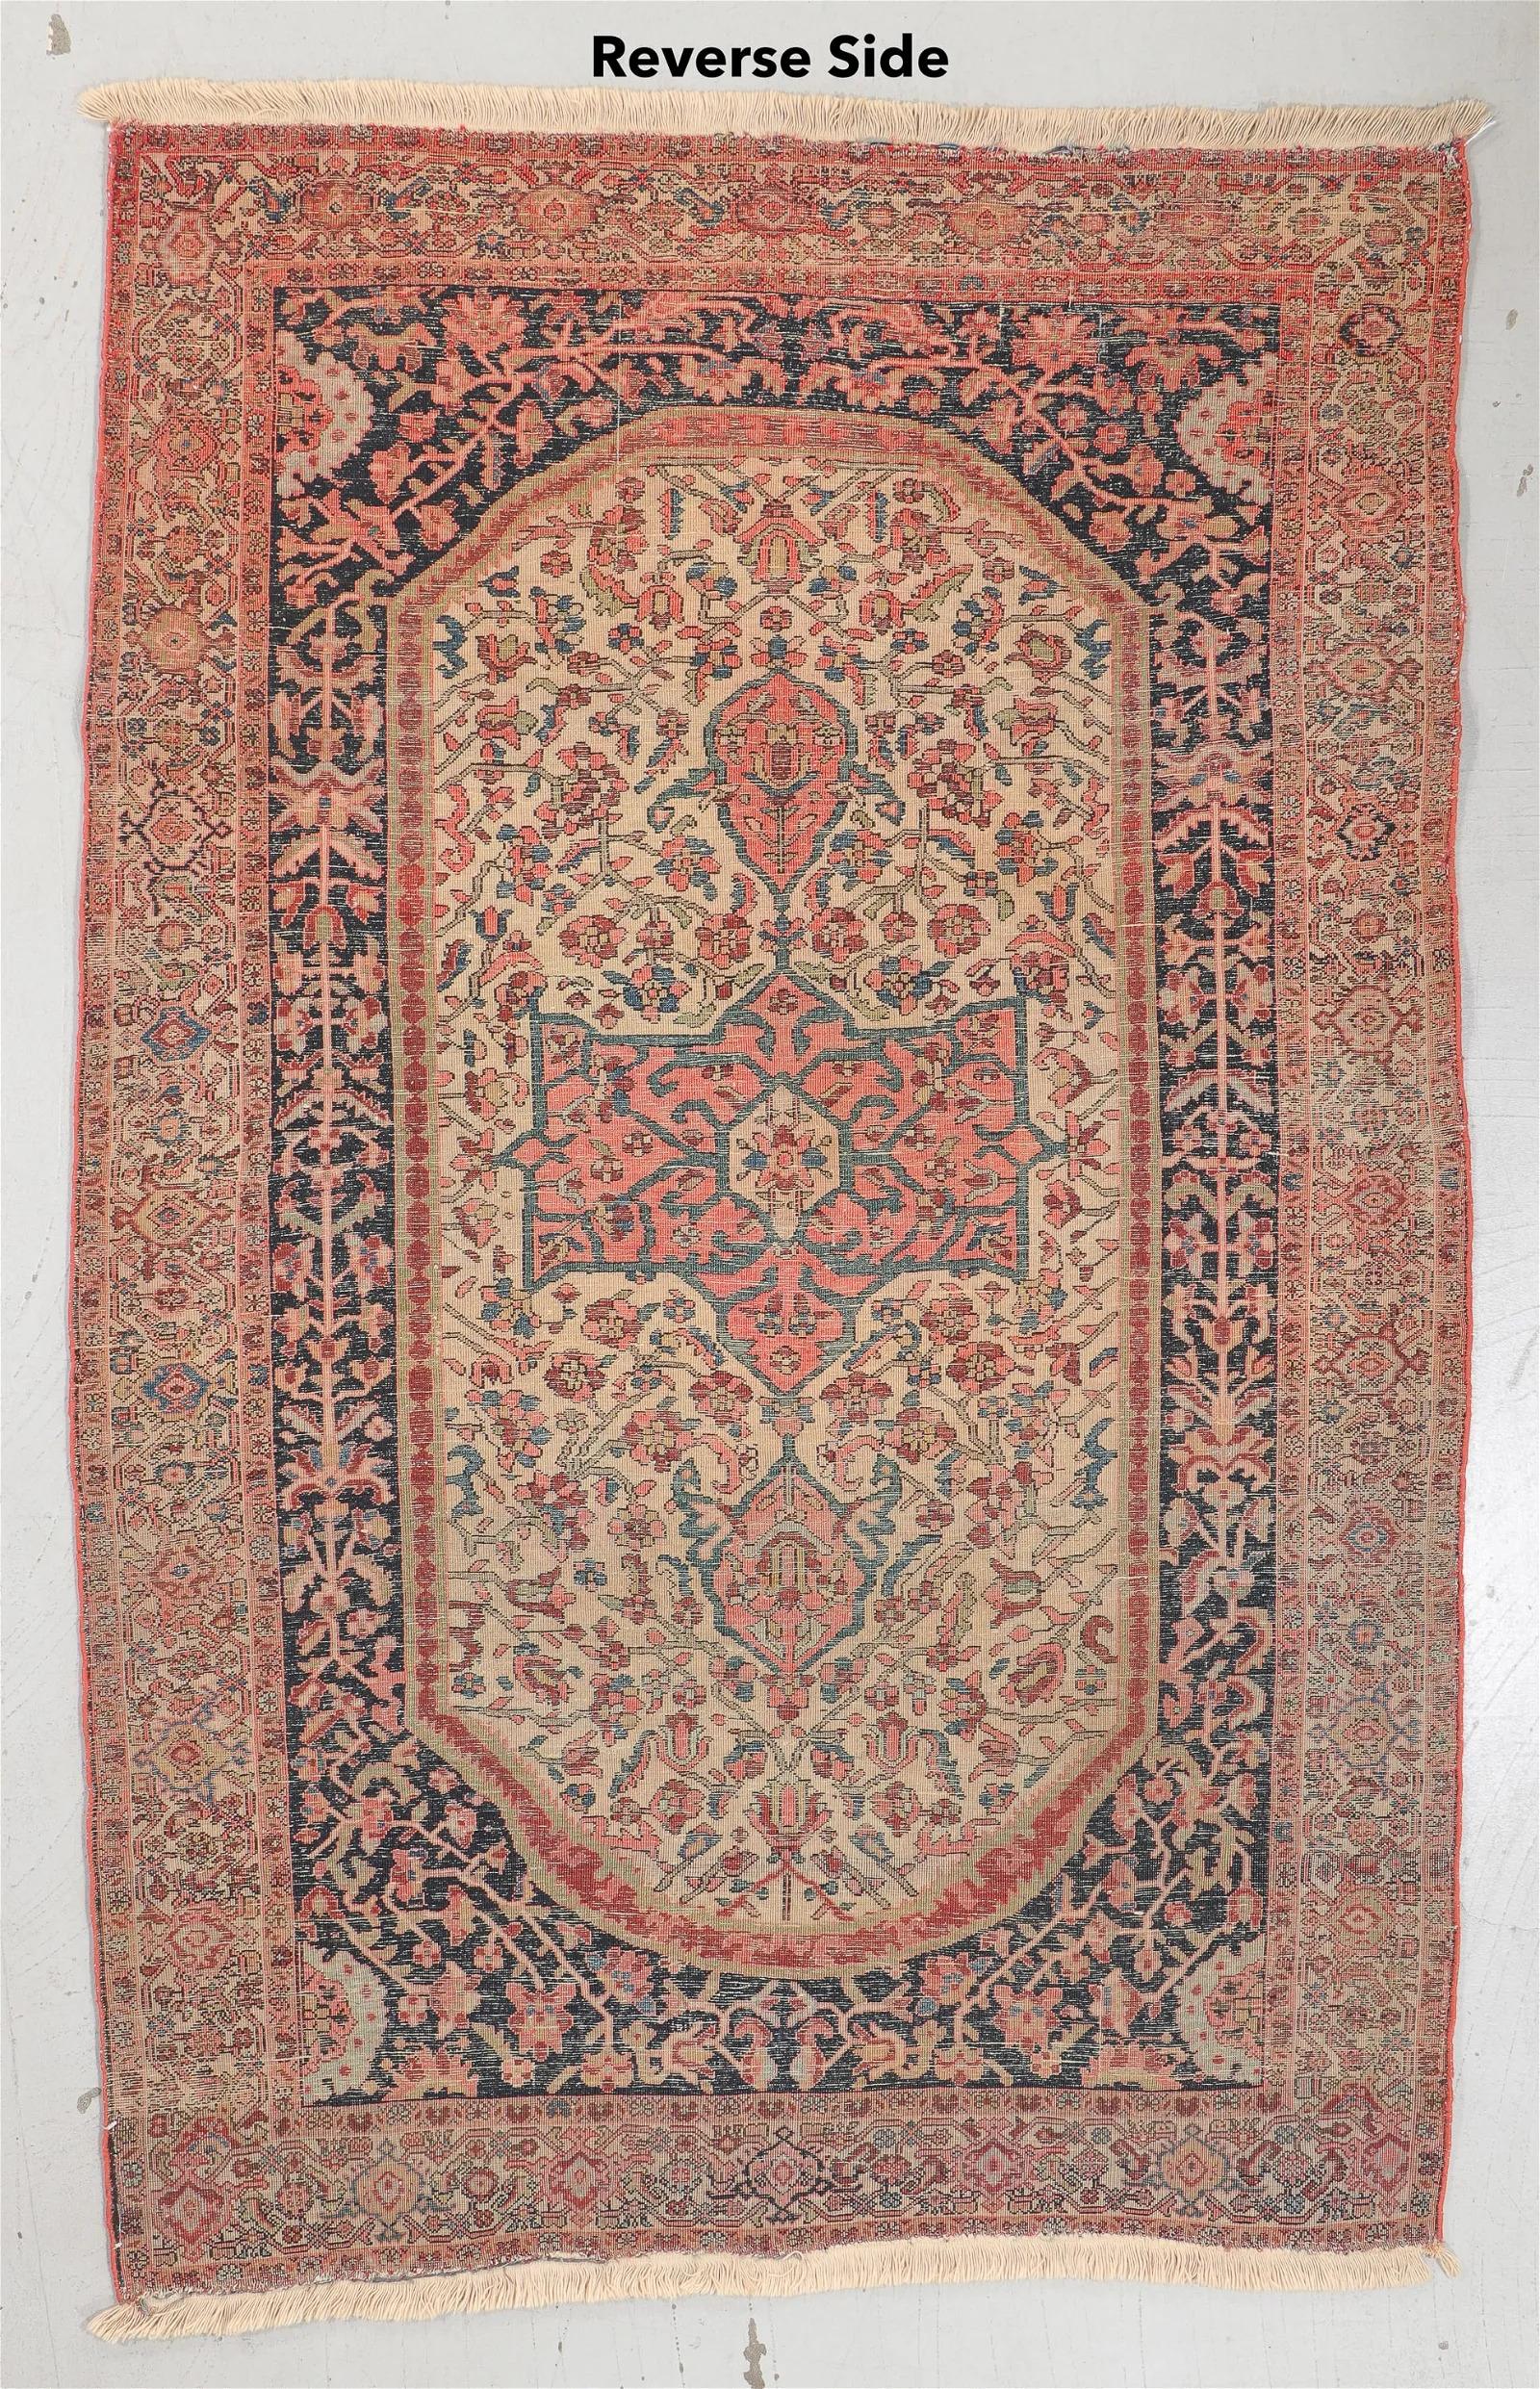 Lassen Sie sich von der zeitlosen Eleganz der persischen Weberei mit diesem exquisiten Sarouk-Ferahan-Teppich aus Persien aus der Zeit um 1900 begeistern. Mit einer Breite von 4 Fuß 3 Zoll und einer Länge von 6 Fuß 10 Zoll (130 x 208 cm) ist dieser